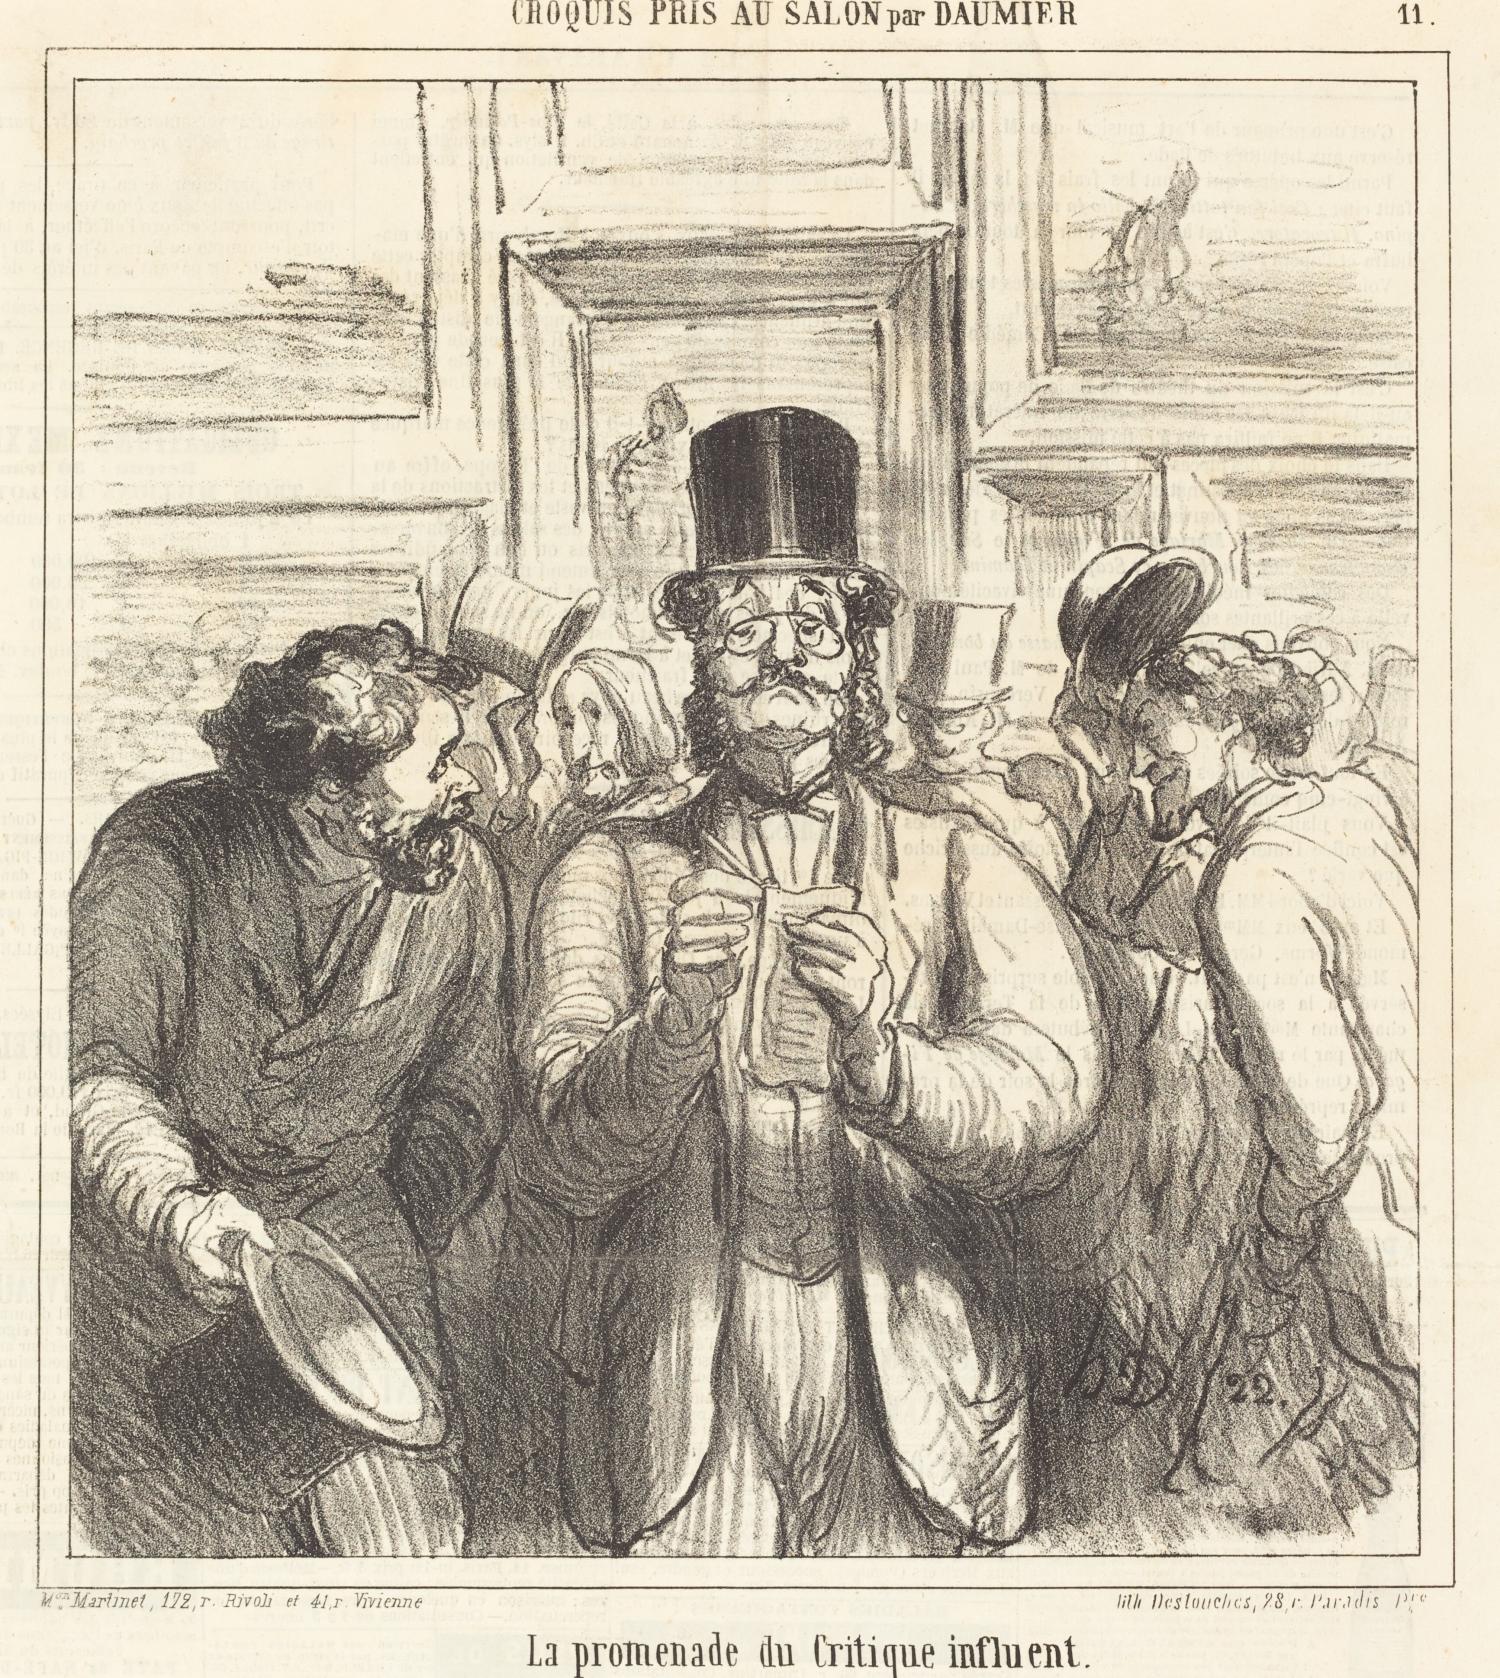 La promenade du Critique influent, door Honoré Daumier (gepubliceerd 24/06/1865)